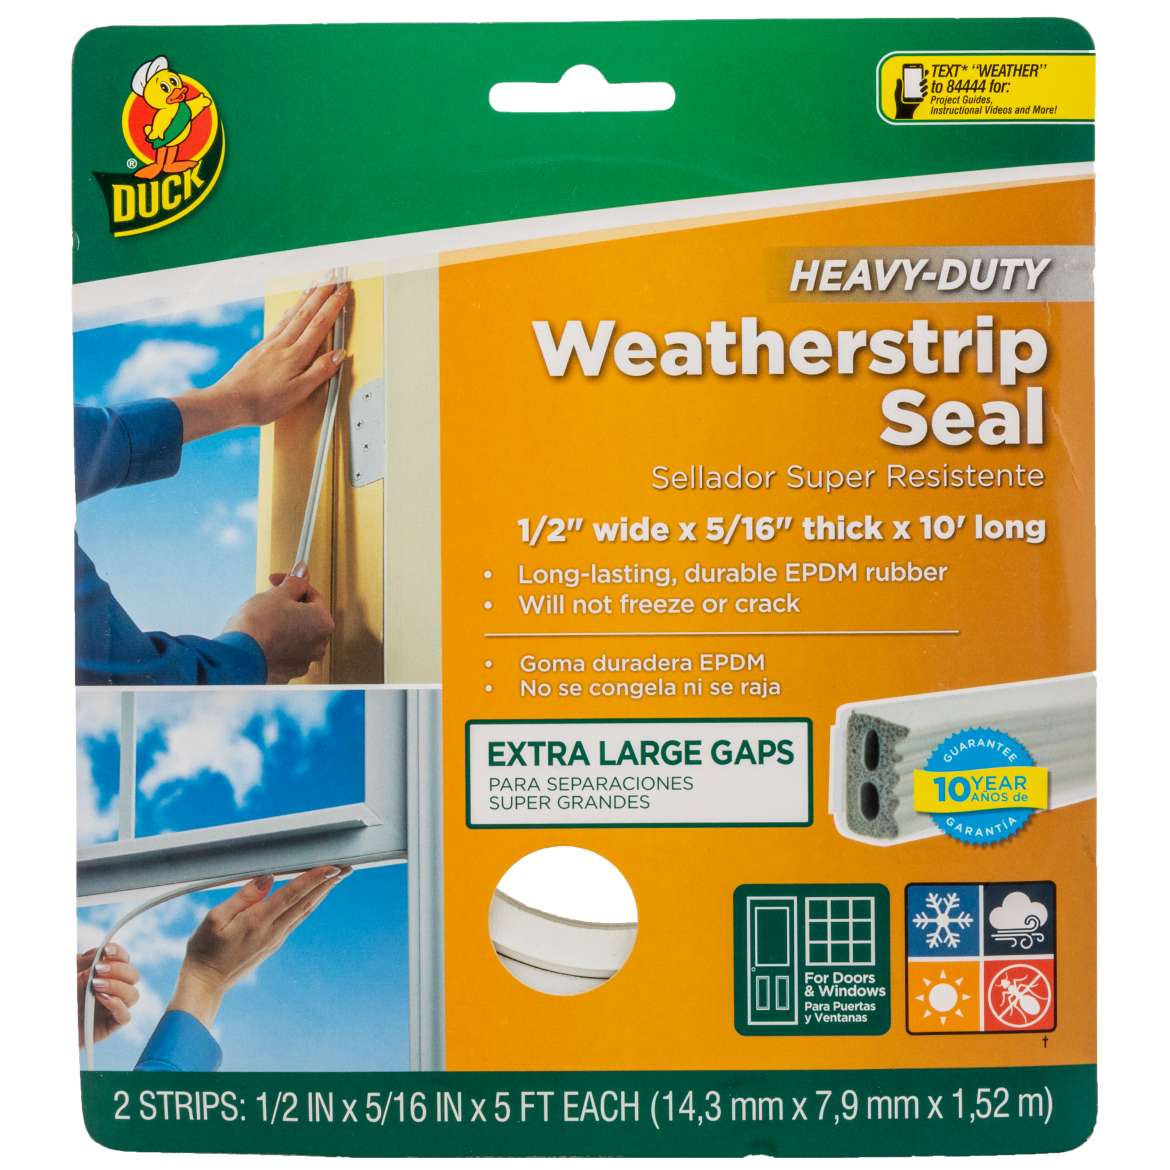 Heavy-Duty Weatherstrip Seals